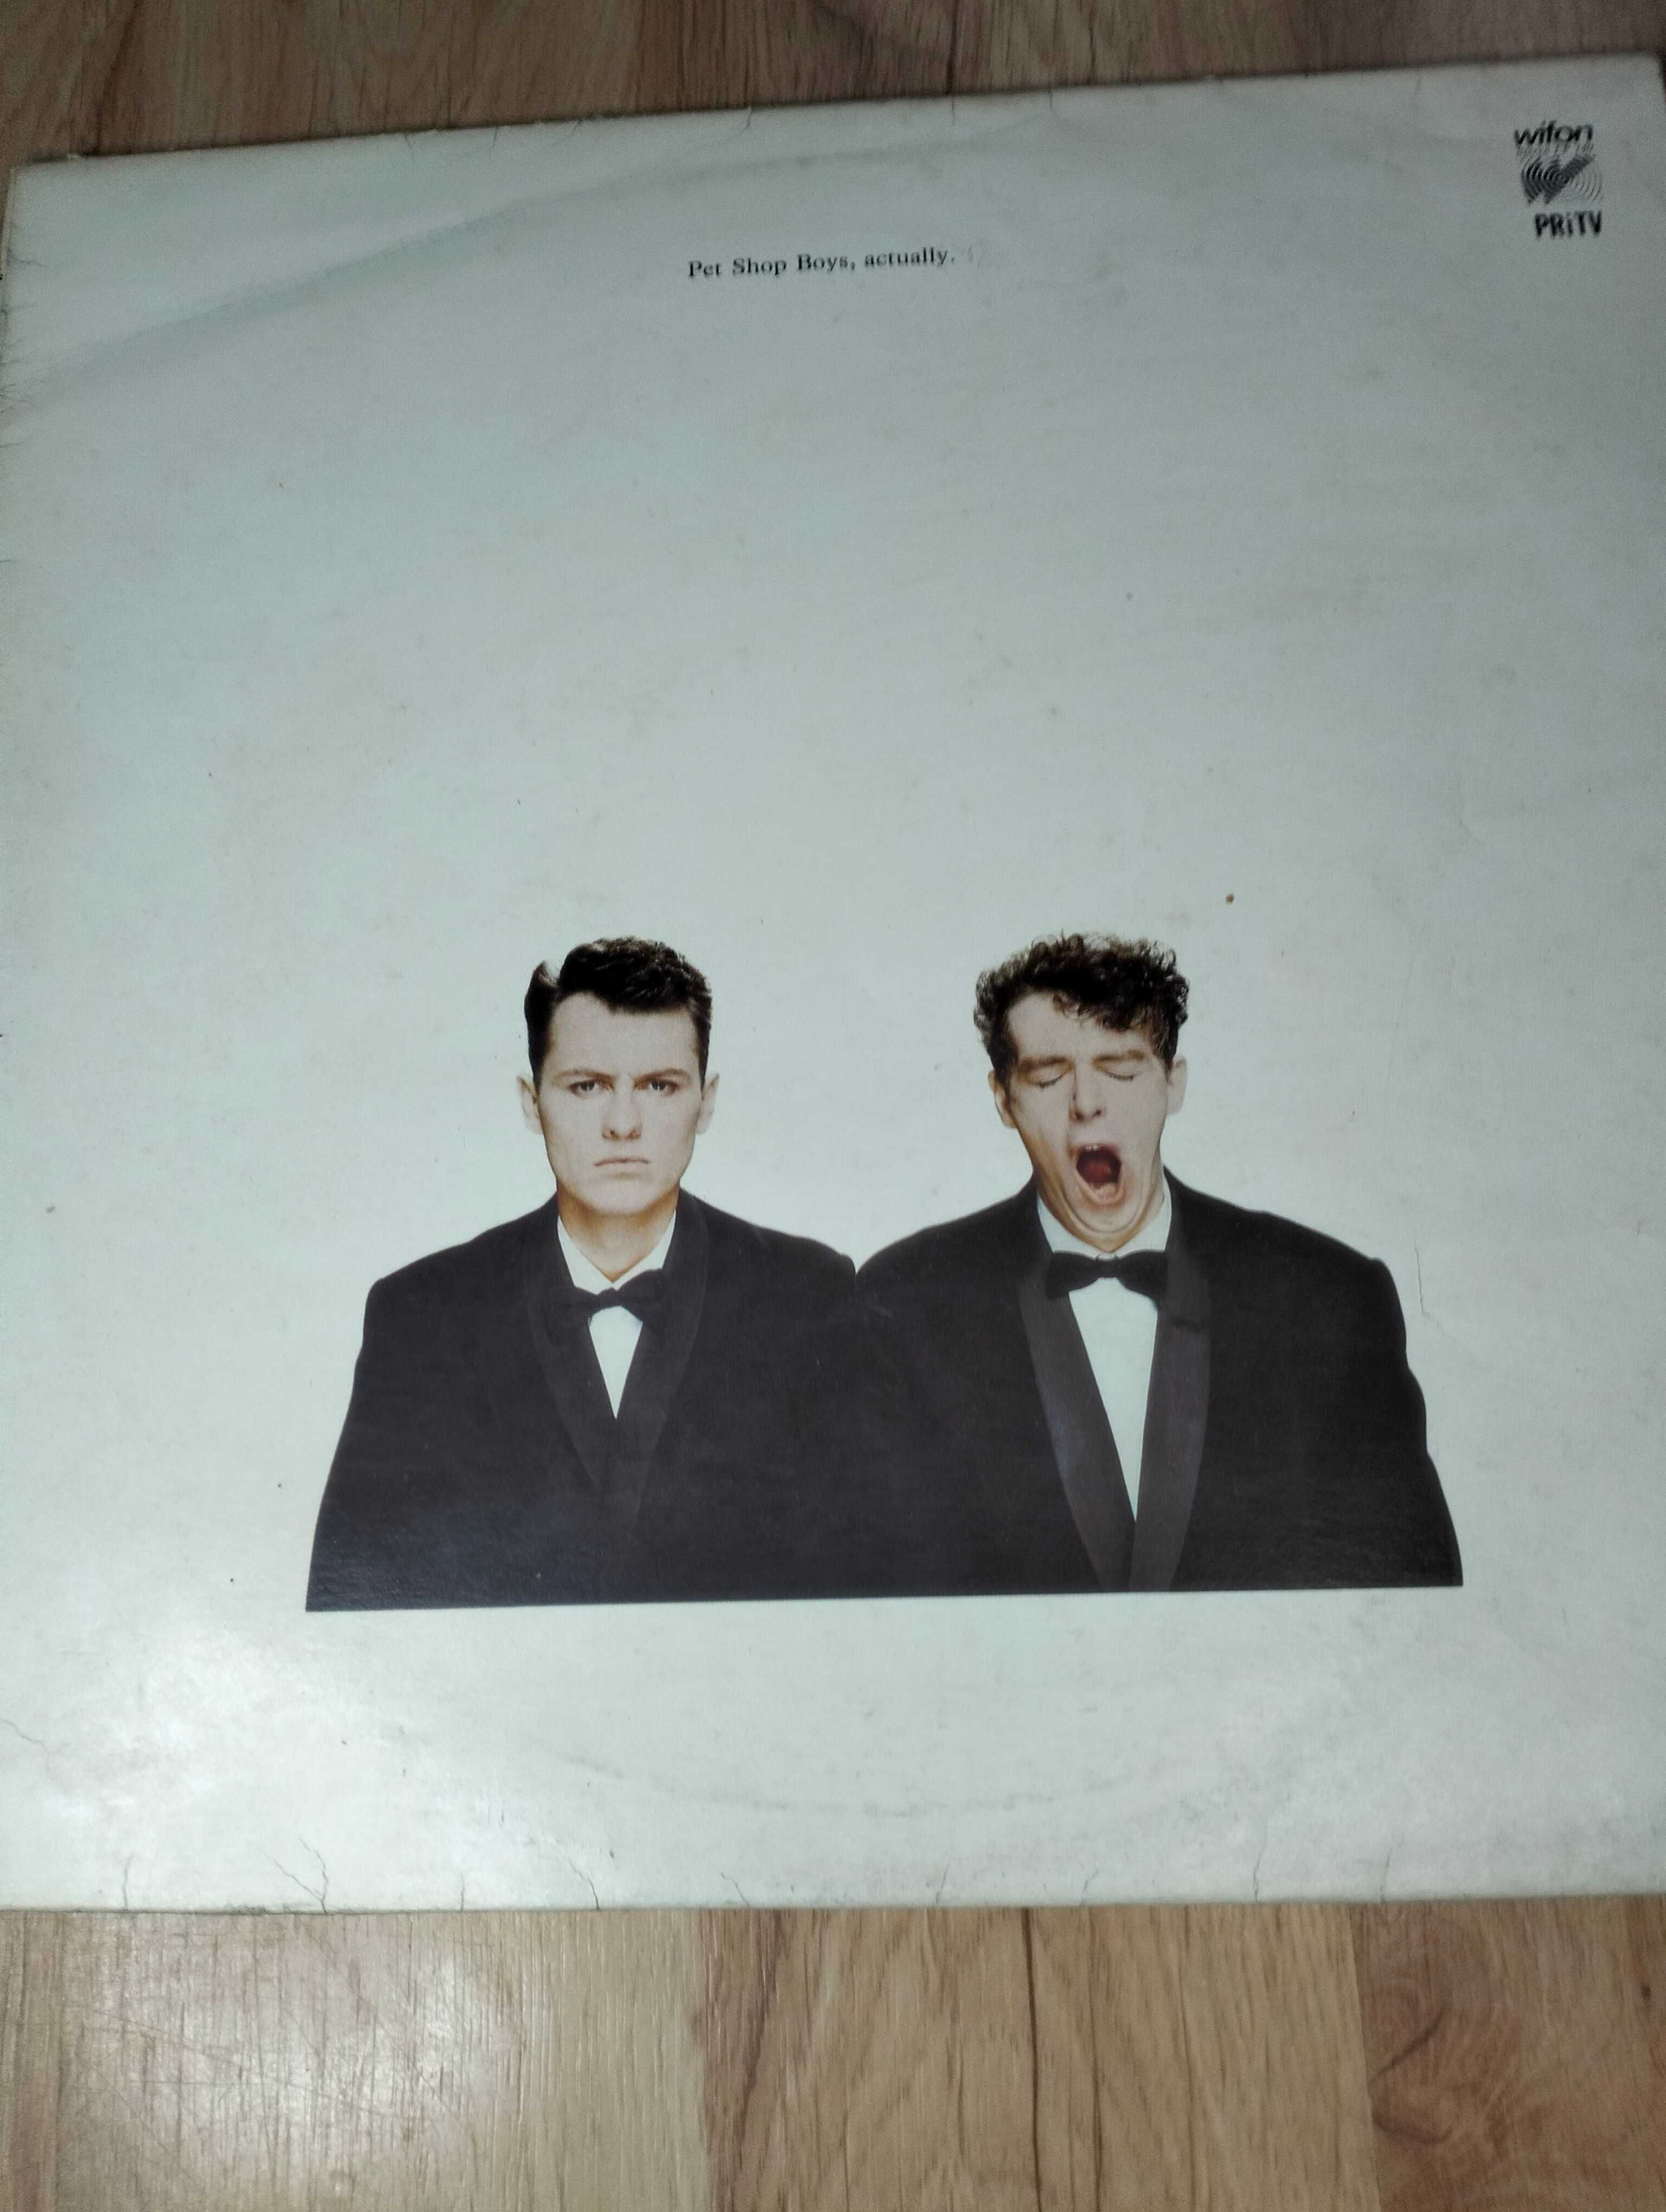 Pet Shop Boys Actually winyl LP